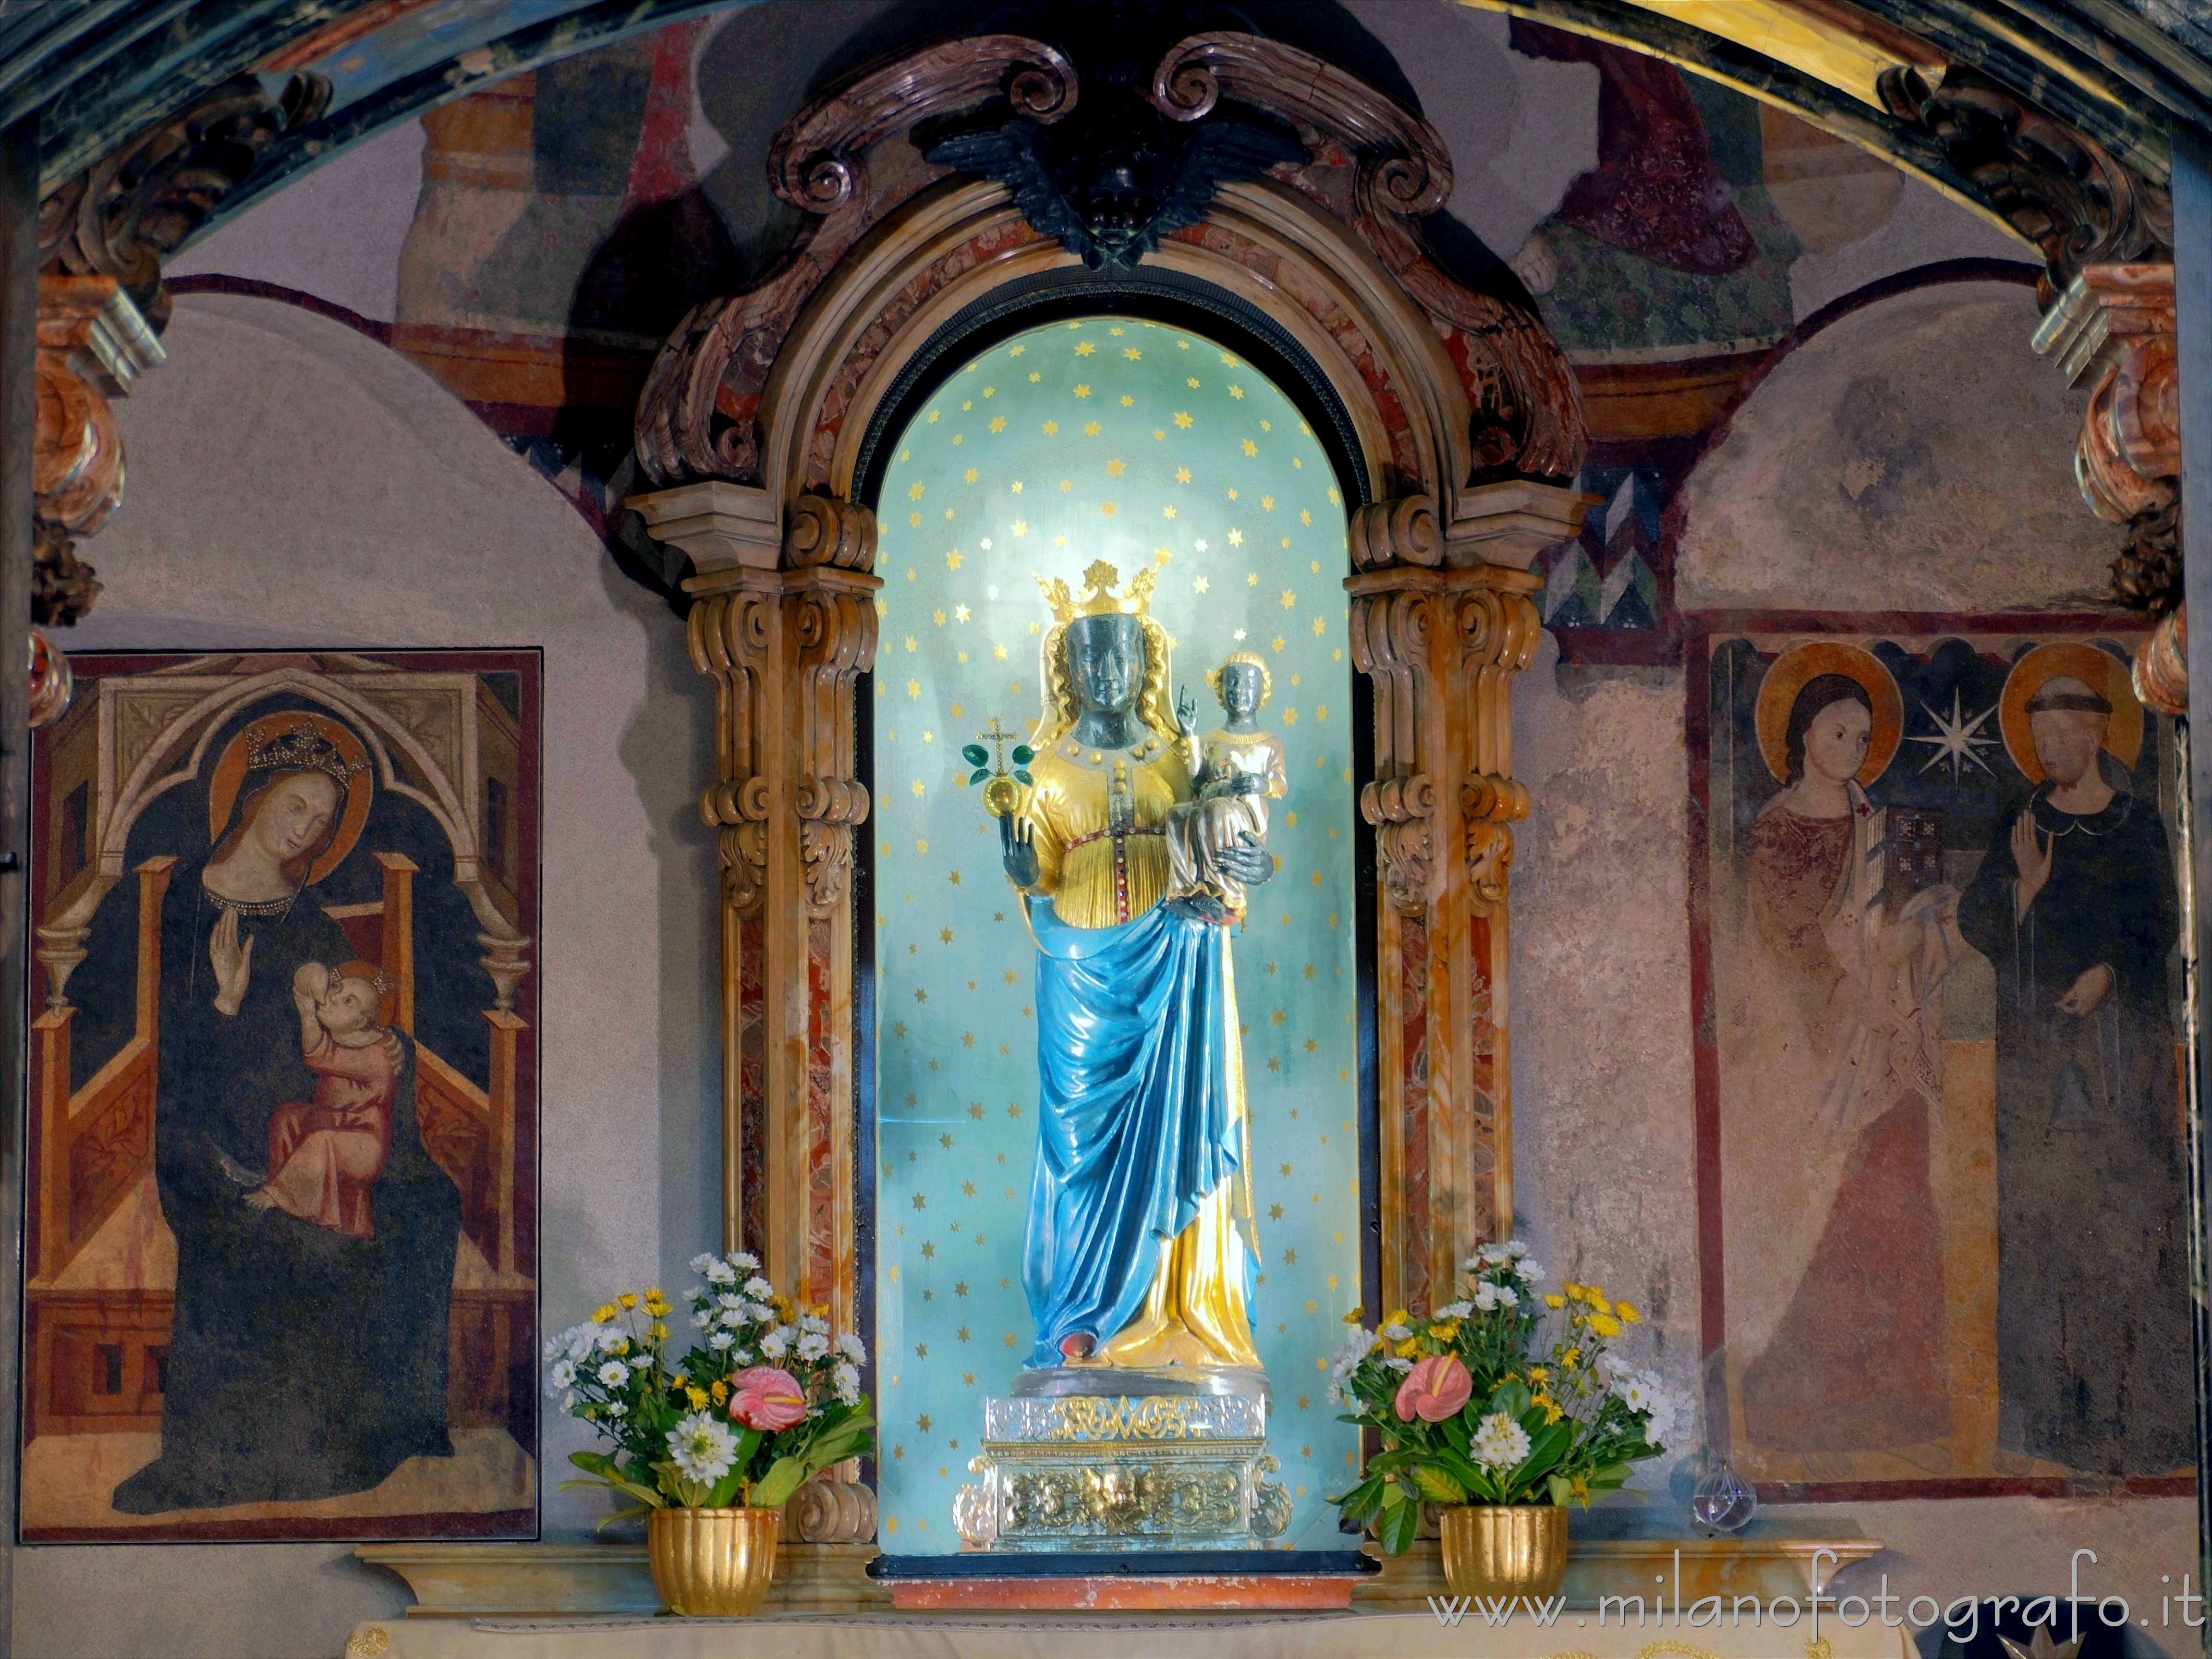 Biella (Italy): Statue of the Black Virgin in the sacellum of the Sanctuary of Oropa - Biella (Italy)